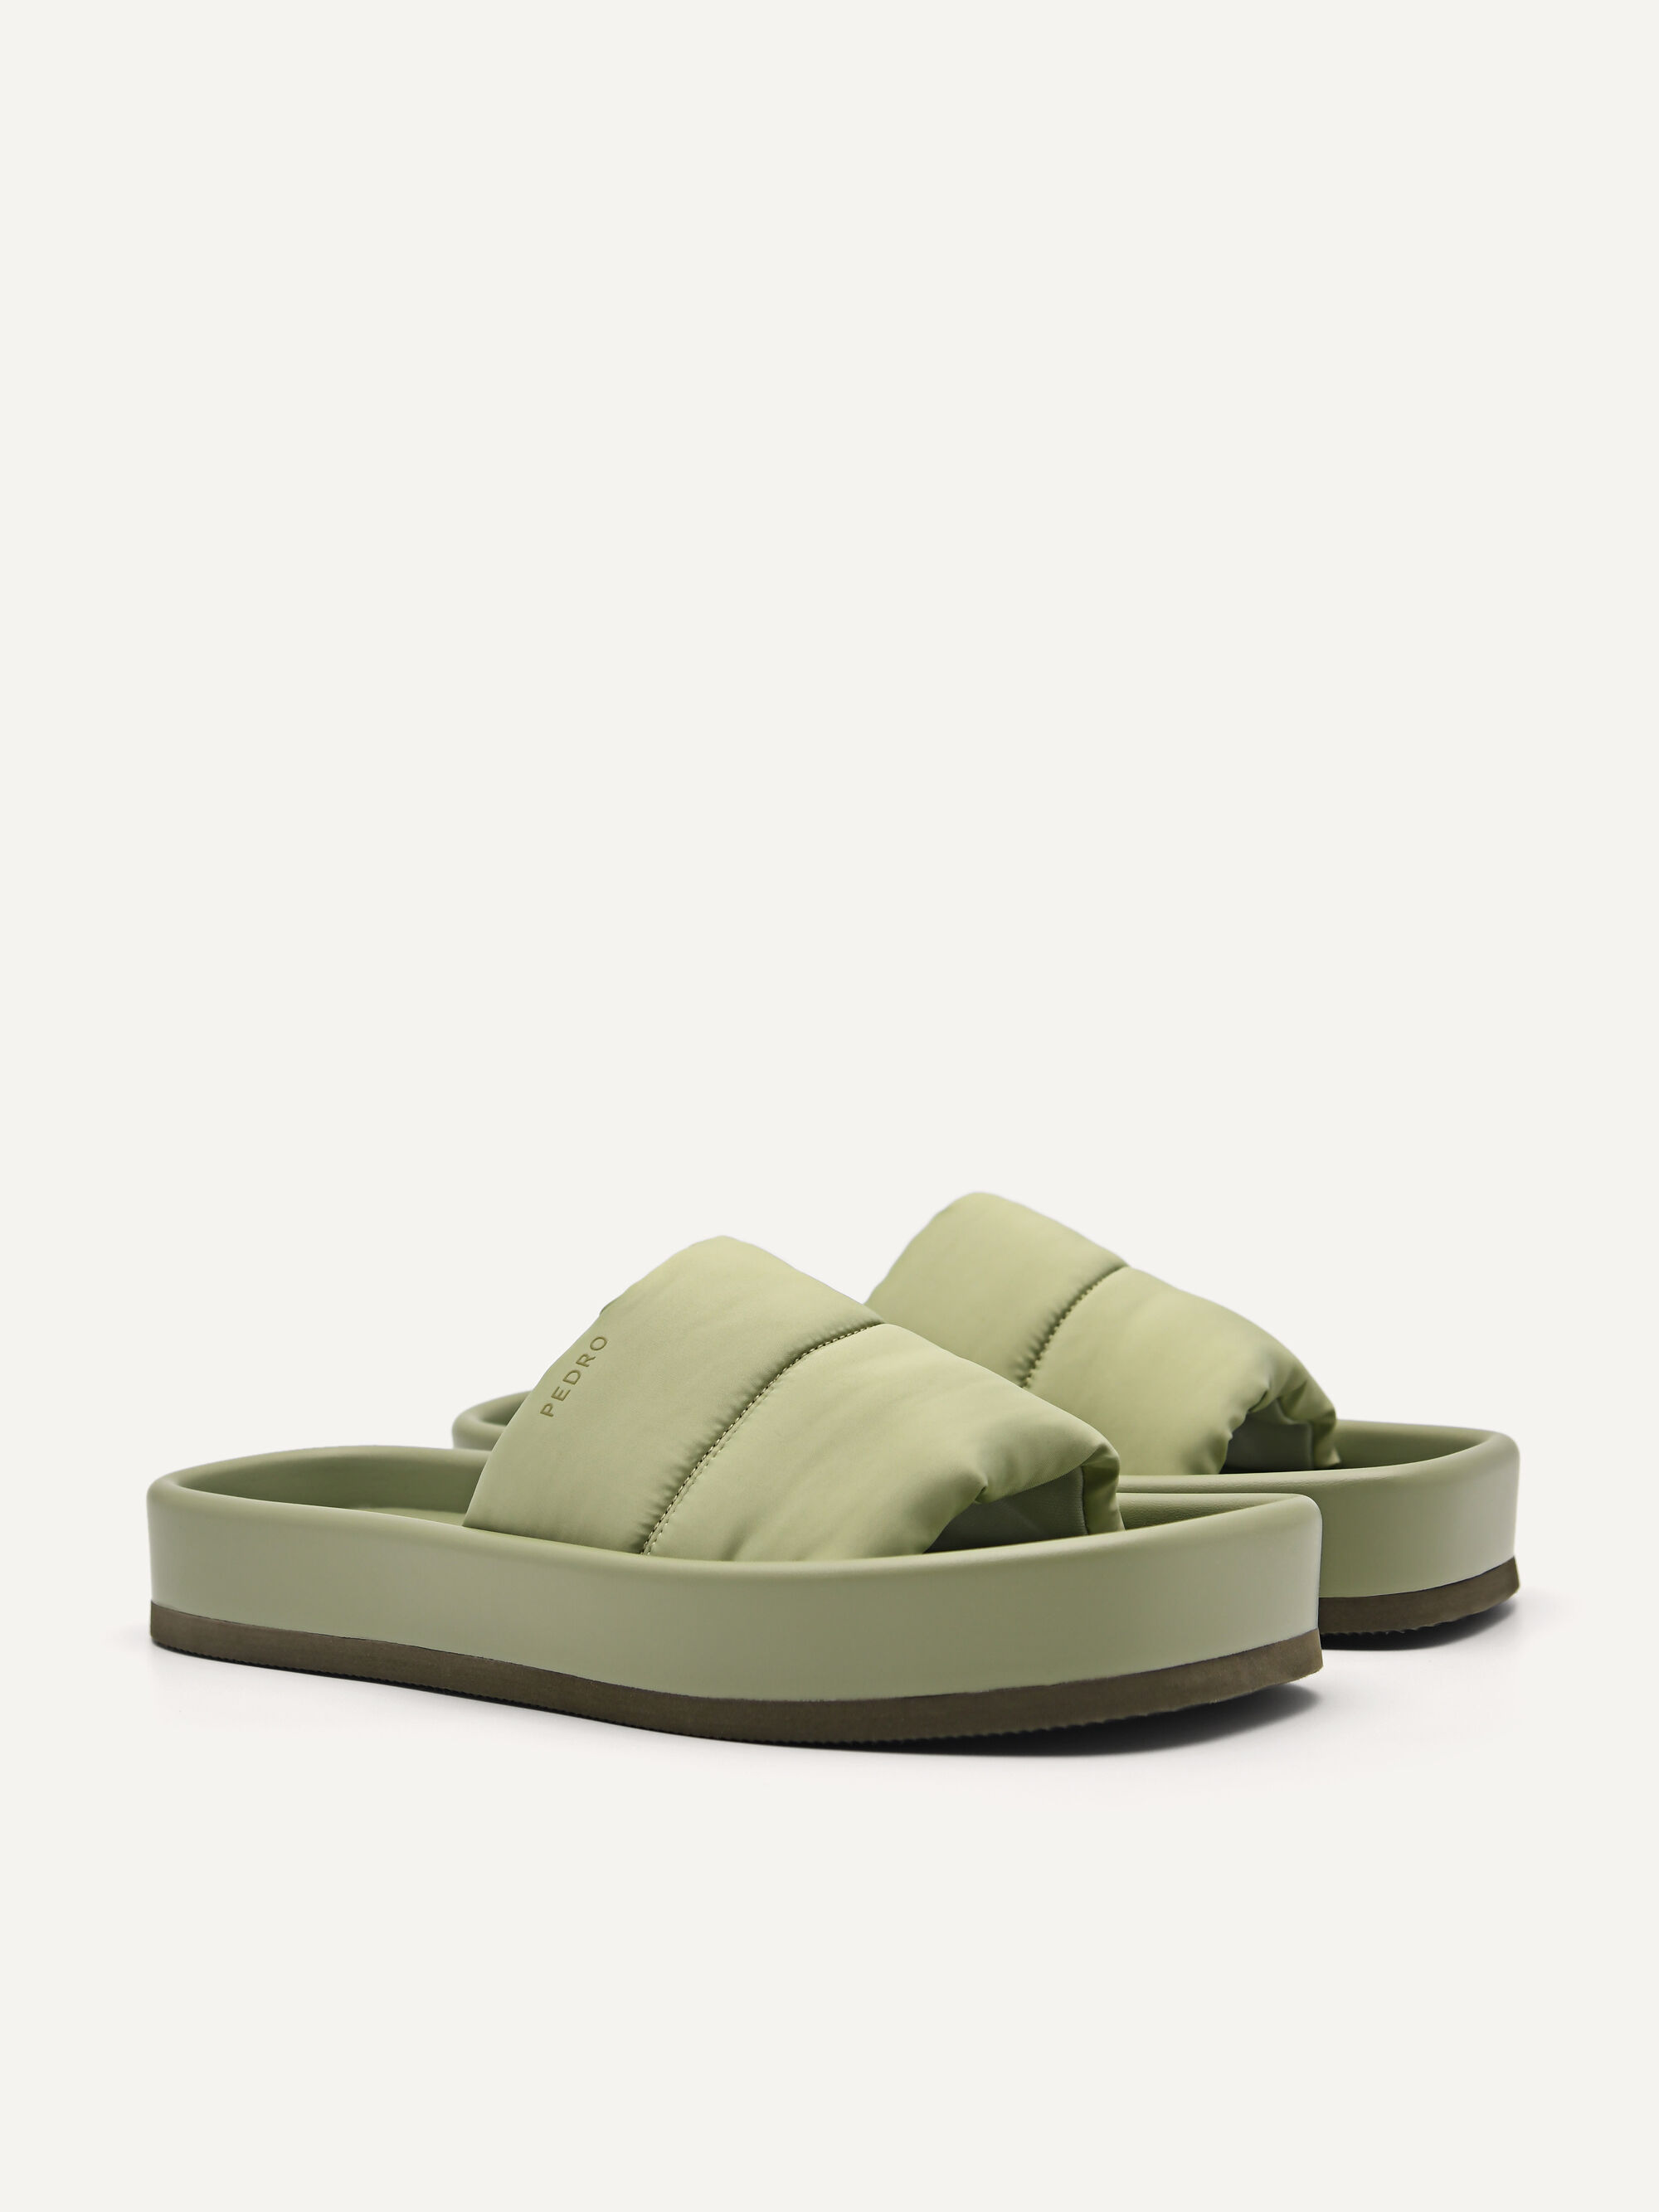 Tilly Nylon Sandals, Light Green